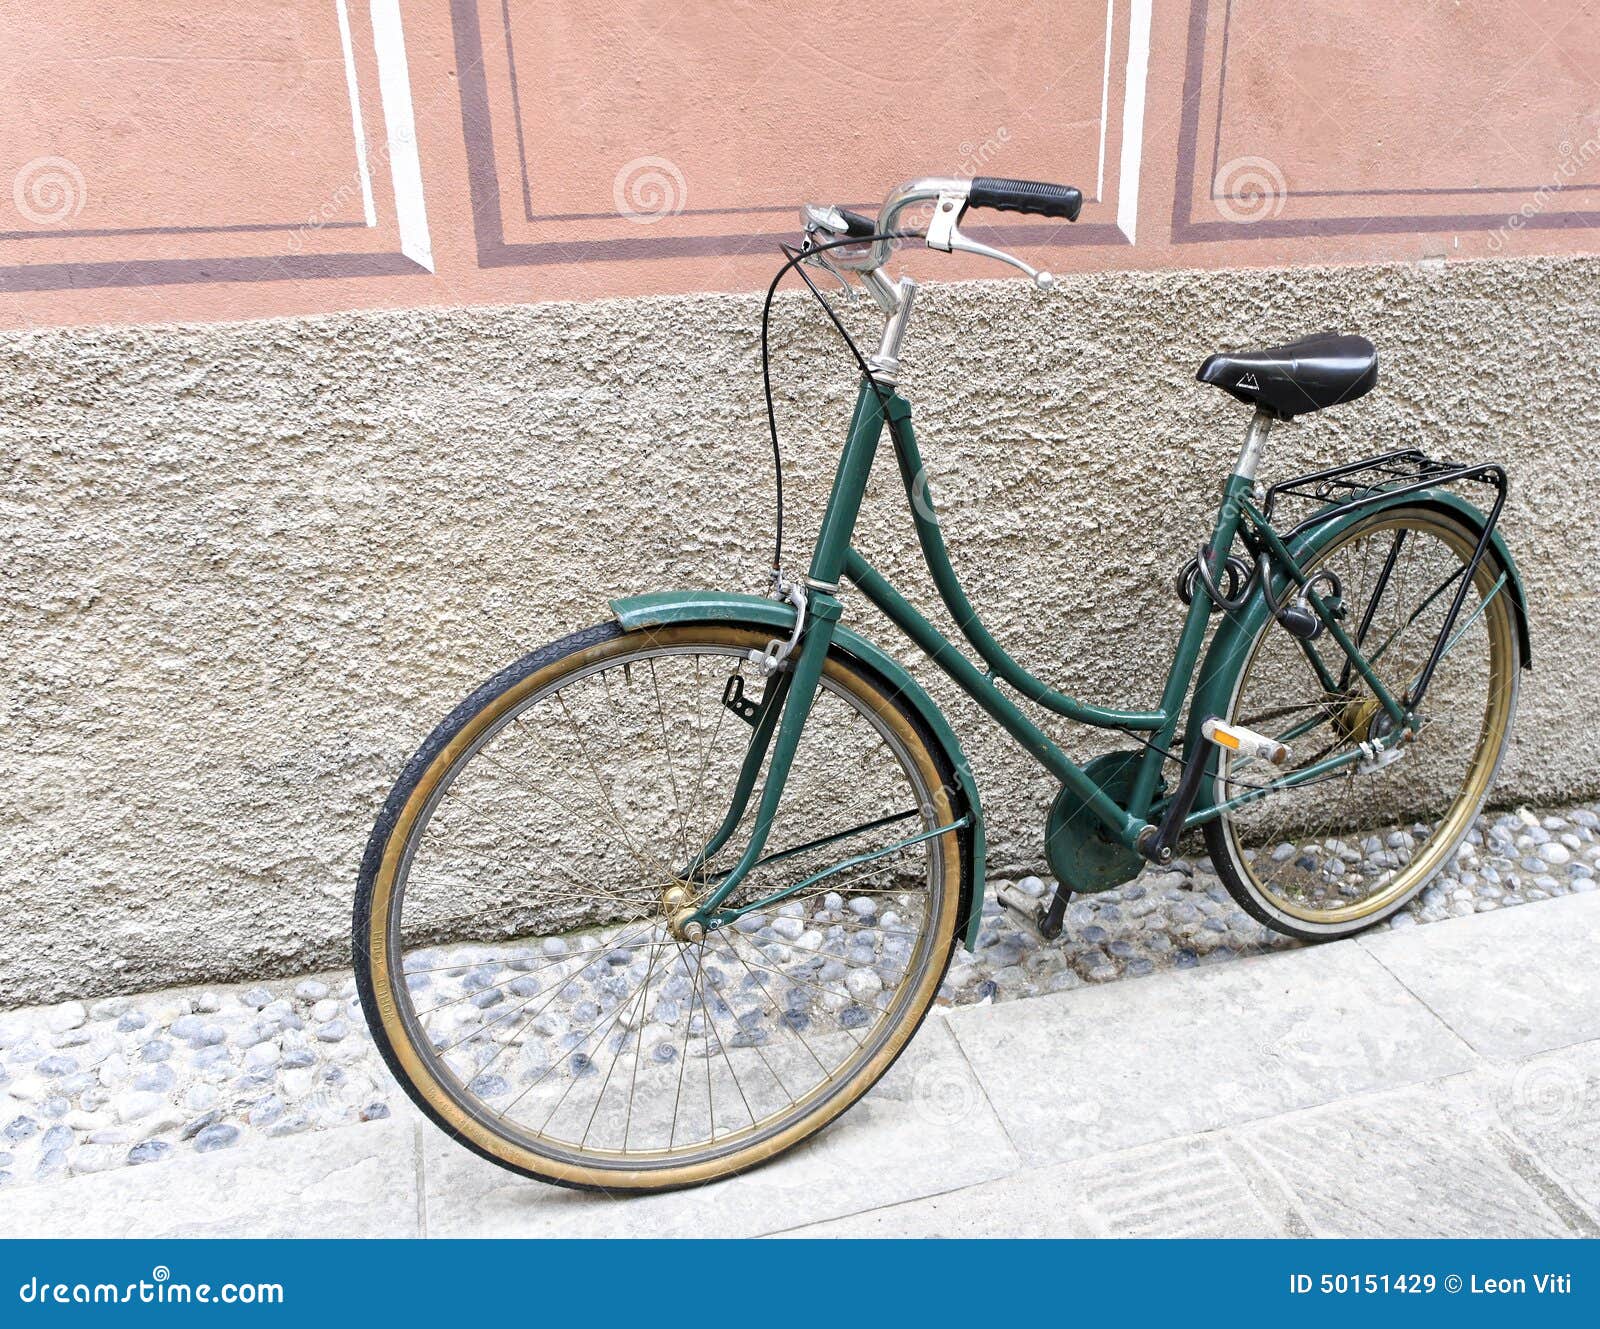 Seizoen Statistisch Methode Groene fiets stock afbeelding. Image of fietsen, ecologisch - 50151429